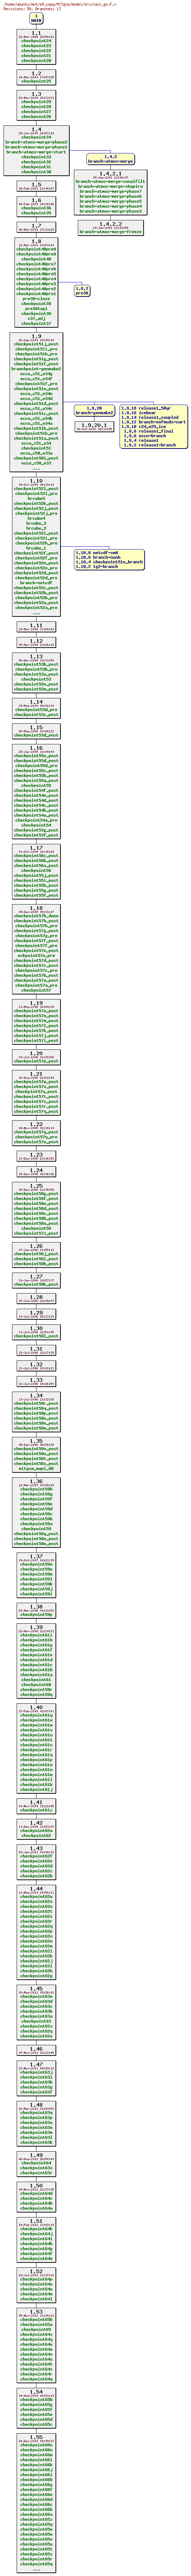 Revisions of MITgcm/model/src/calc_gw.F